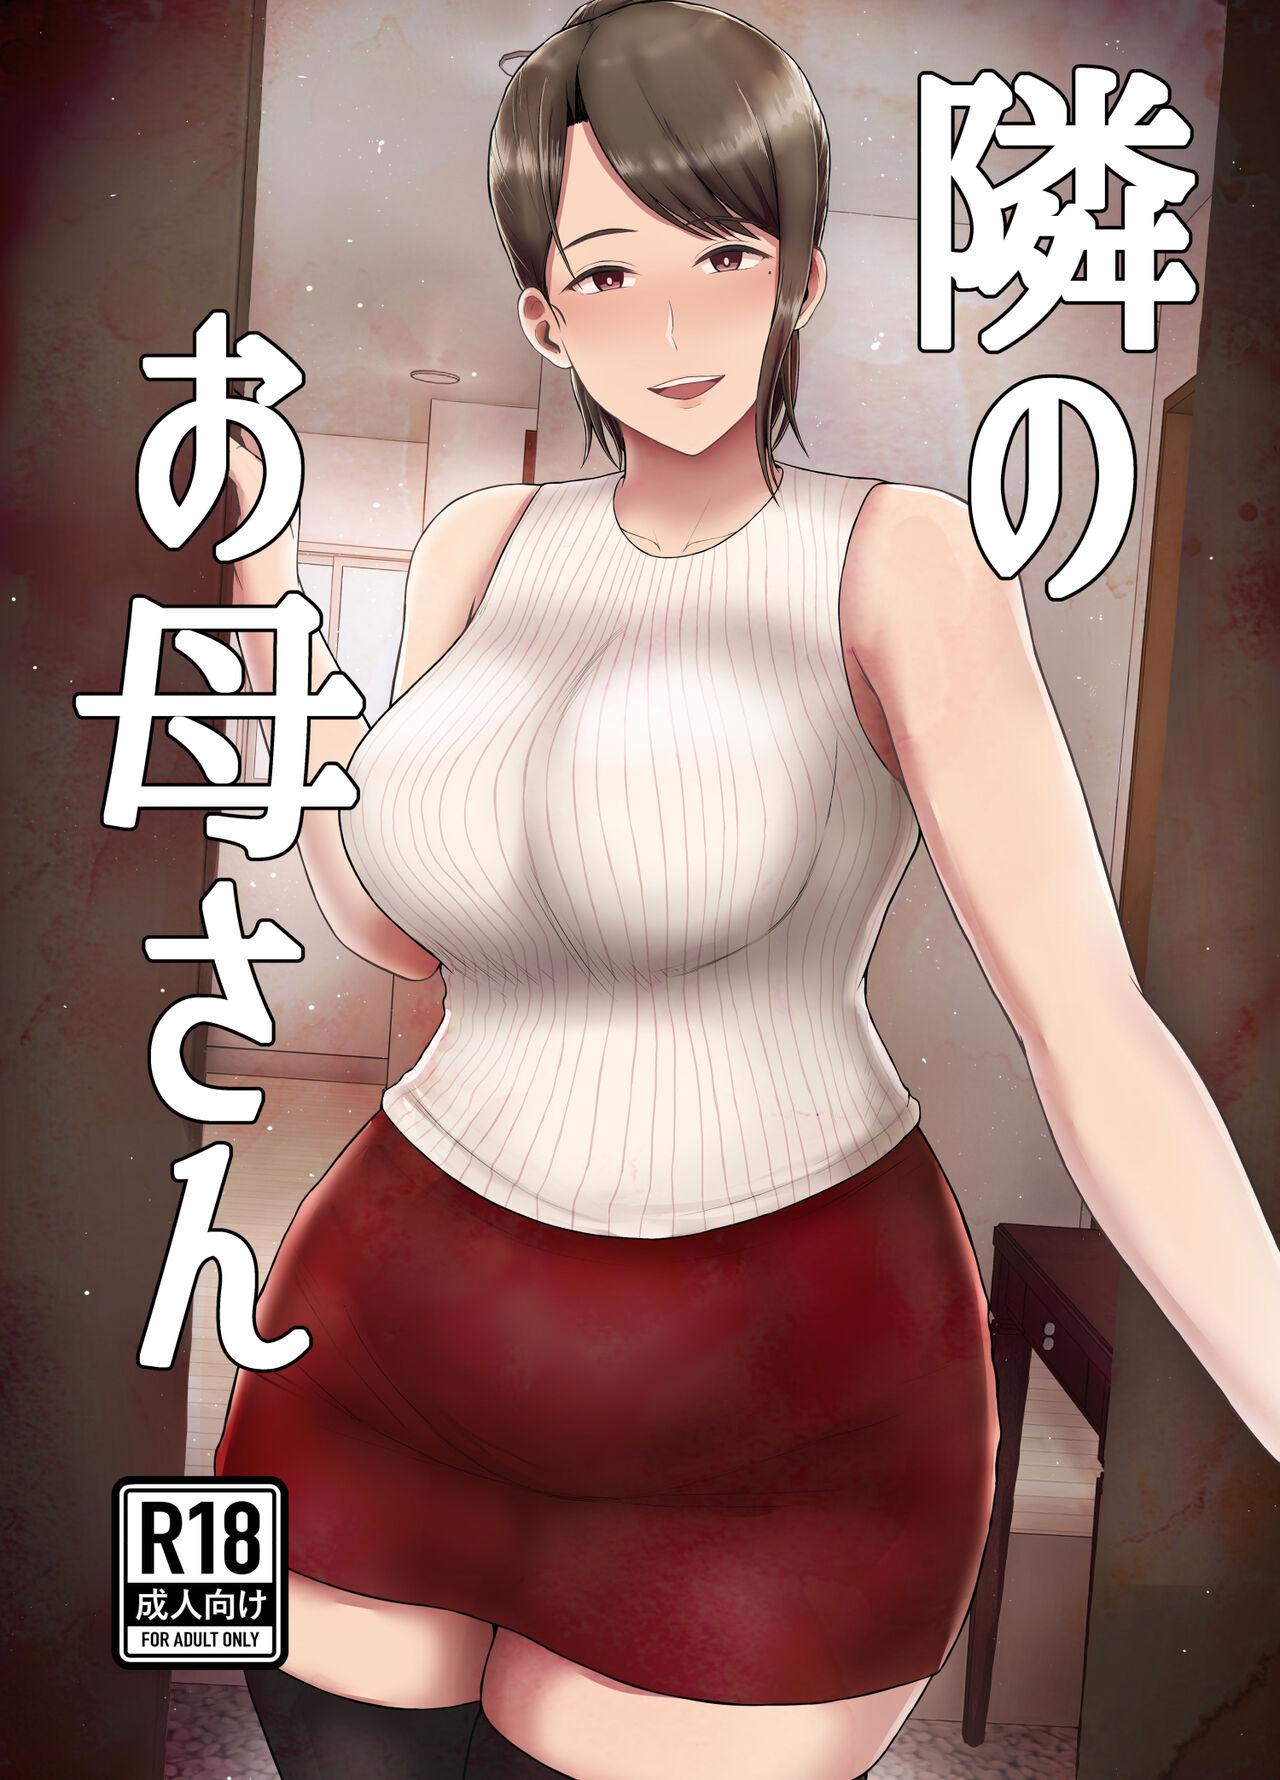 Bulge Tonari no Okaasan - Original Solo Female - Picture 1